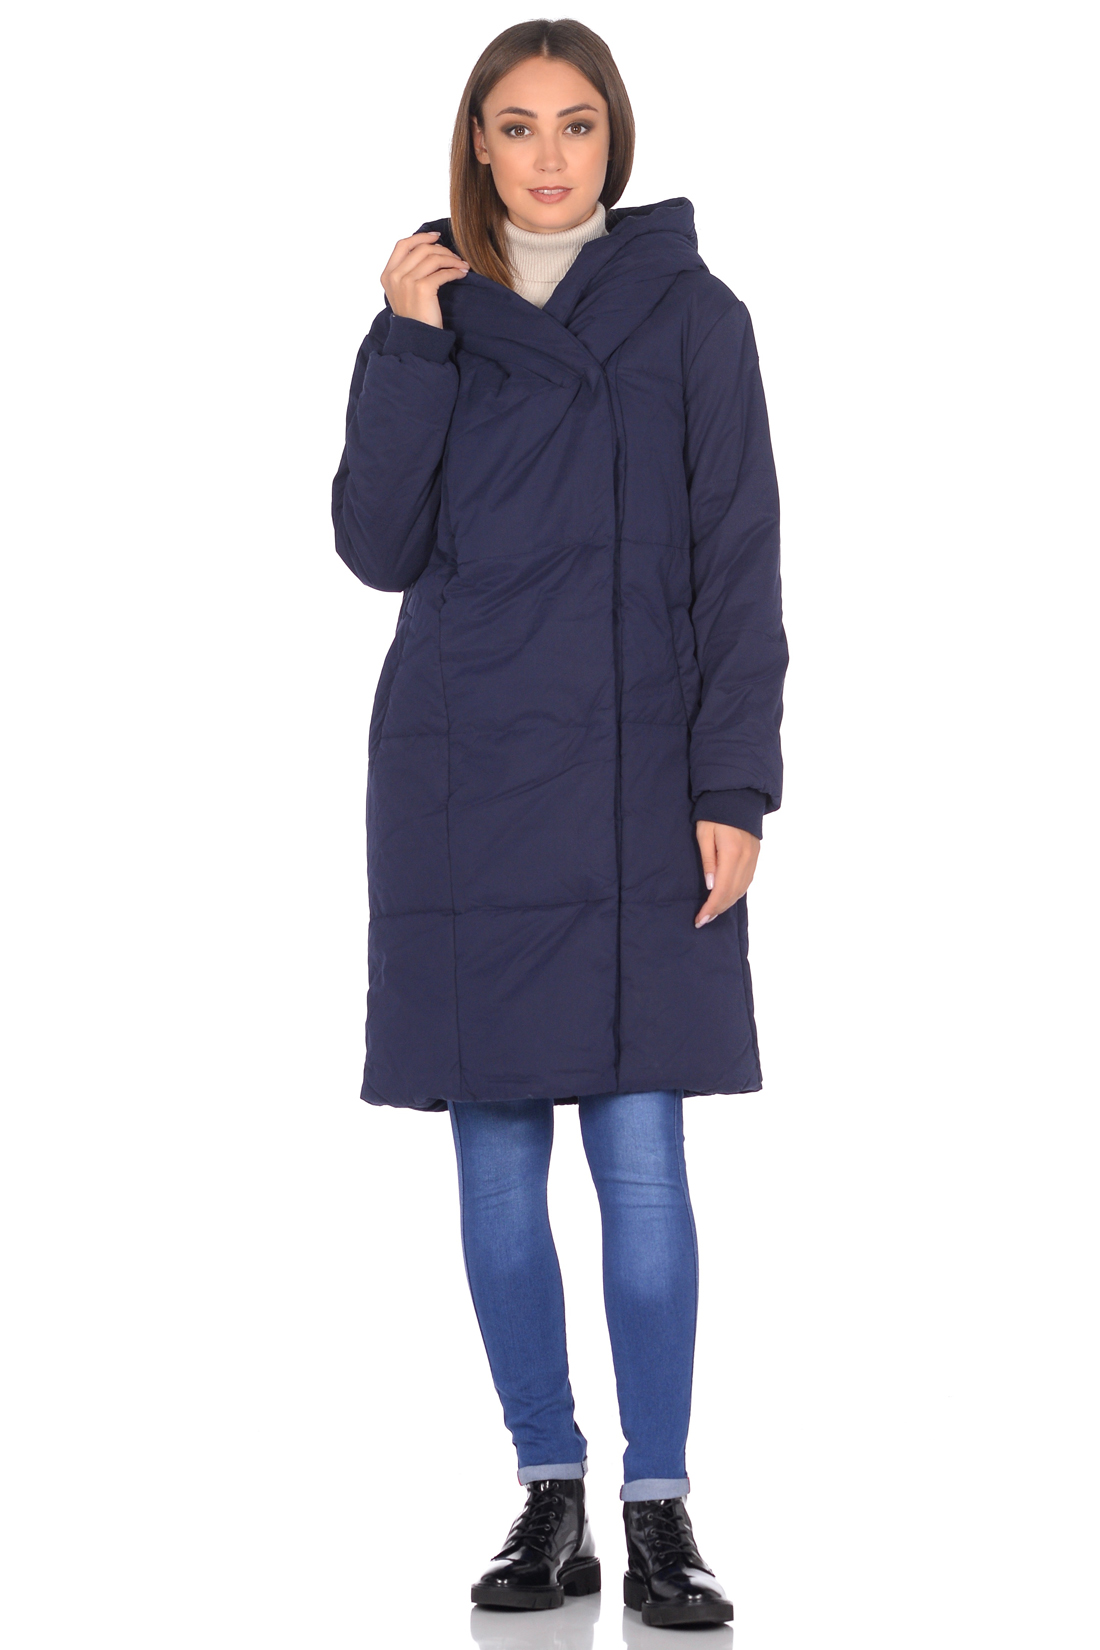 Синяя куртка-кокон (арт. baon B038526), размер XXL, цвет синий Синяя куртка-кокон (арт. baon B038526) - фото 5